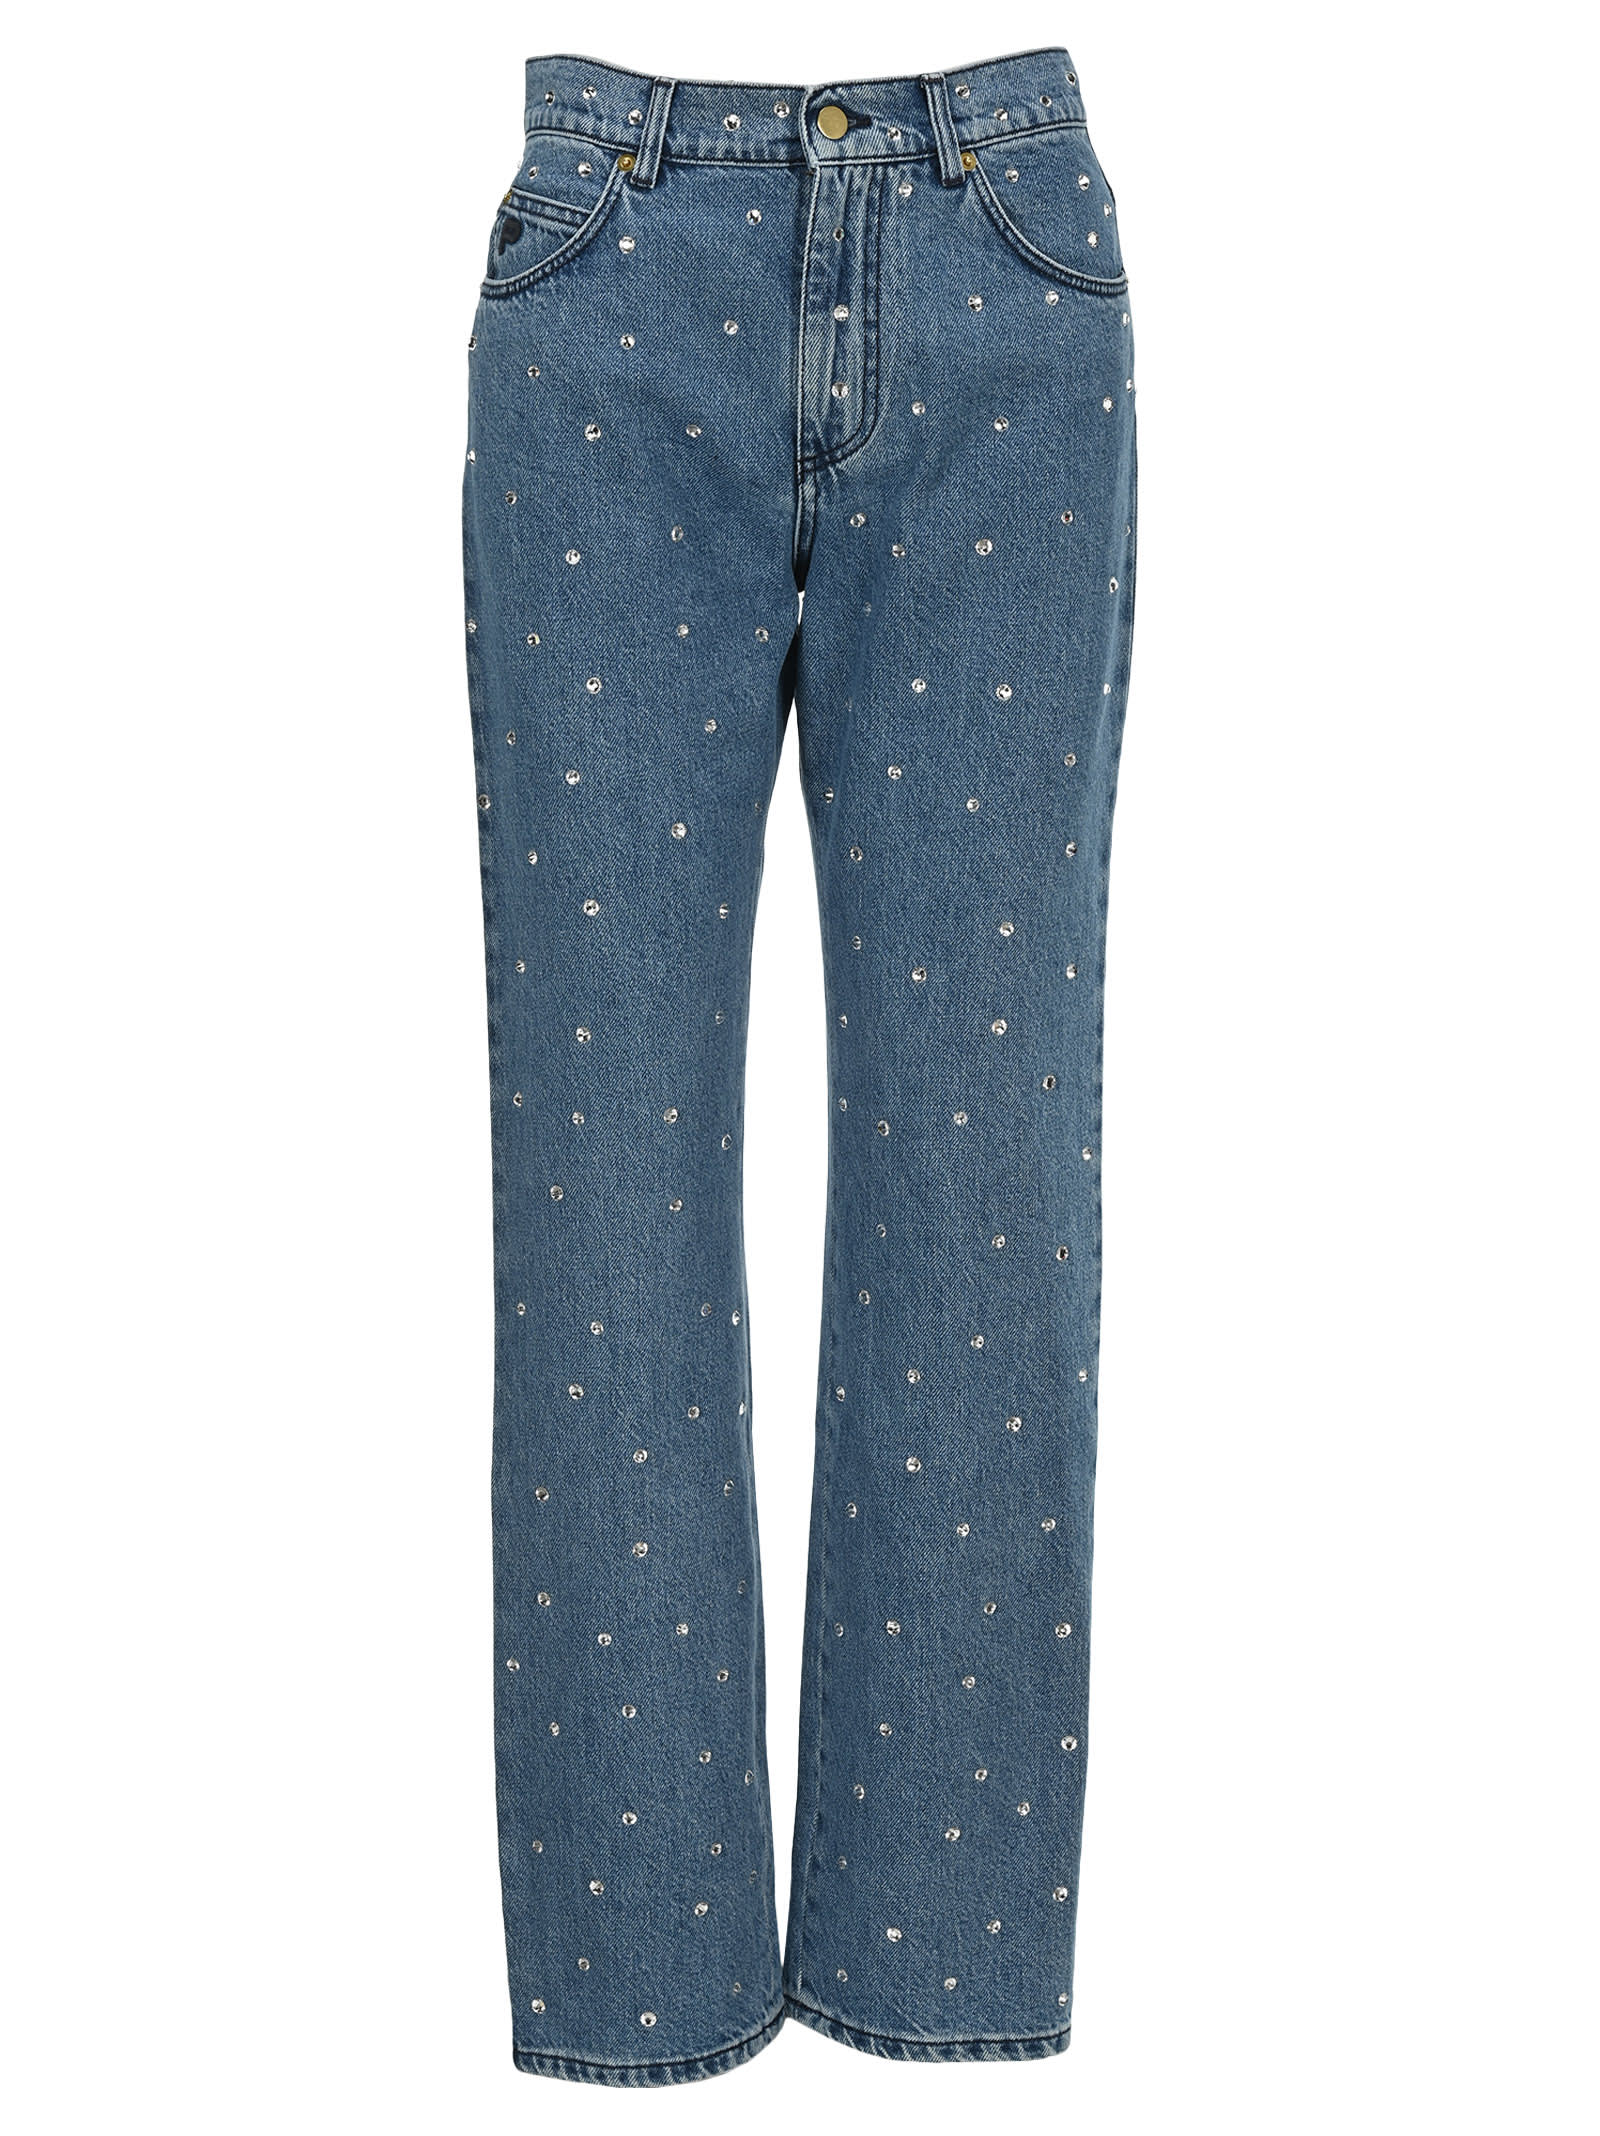 rhinestone embellished jeans